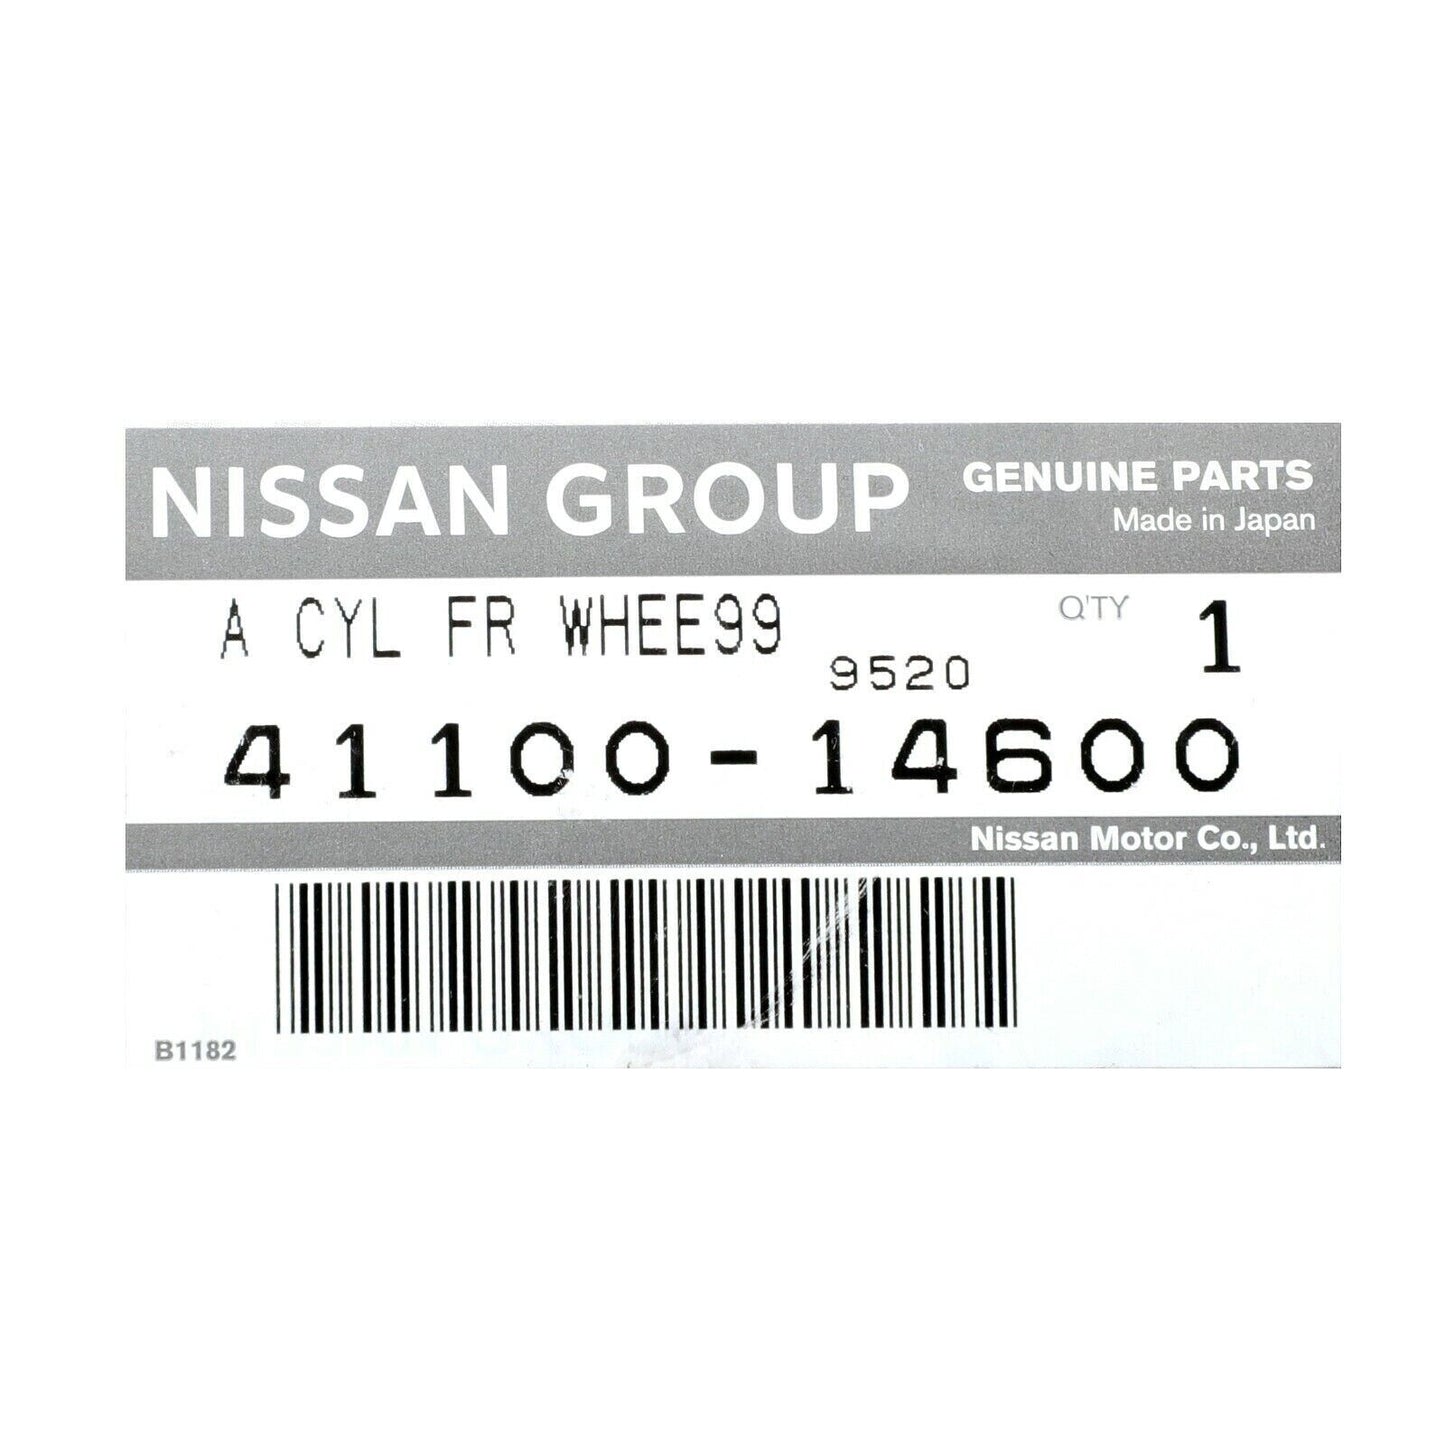 Genuine Nissan OEM DATSUN SR311 ROADSTER INNER DISC BRAKE CALIPER 41100-14600